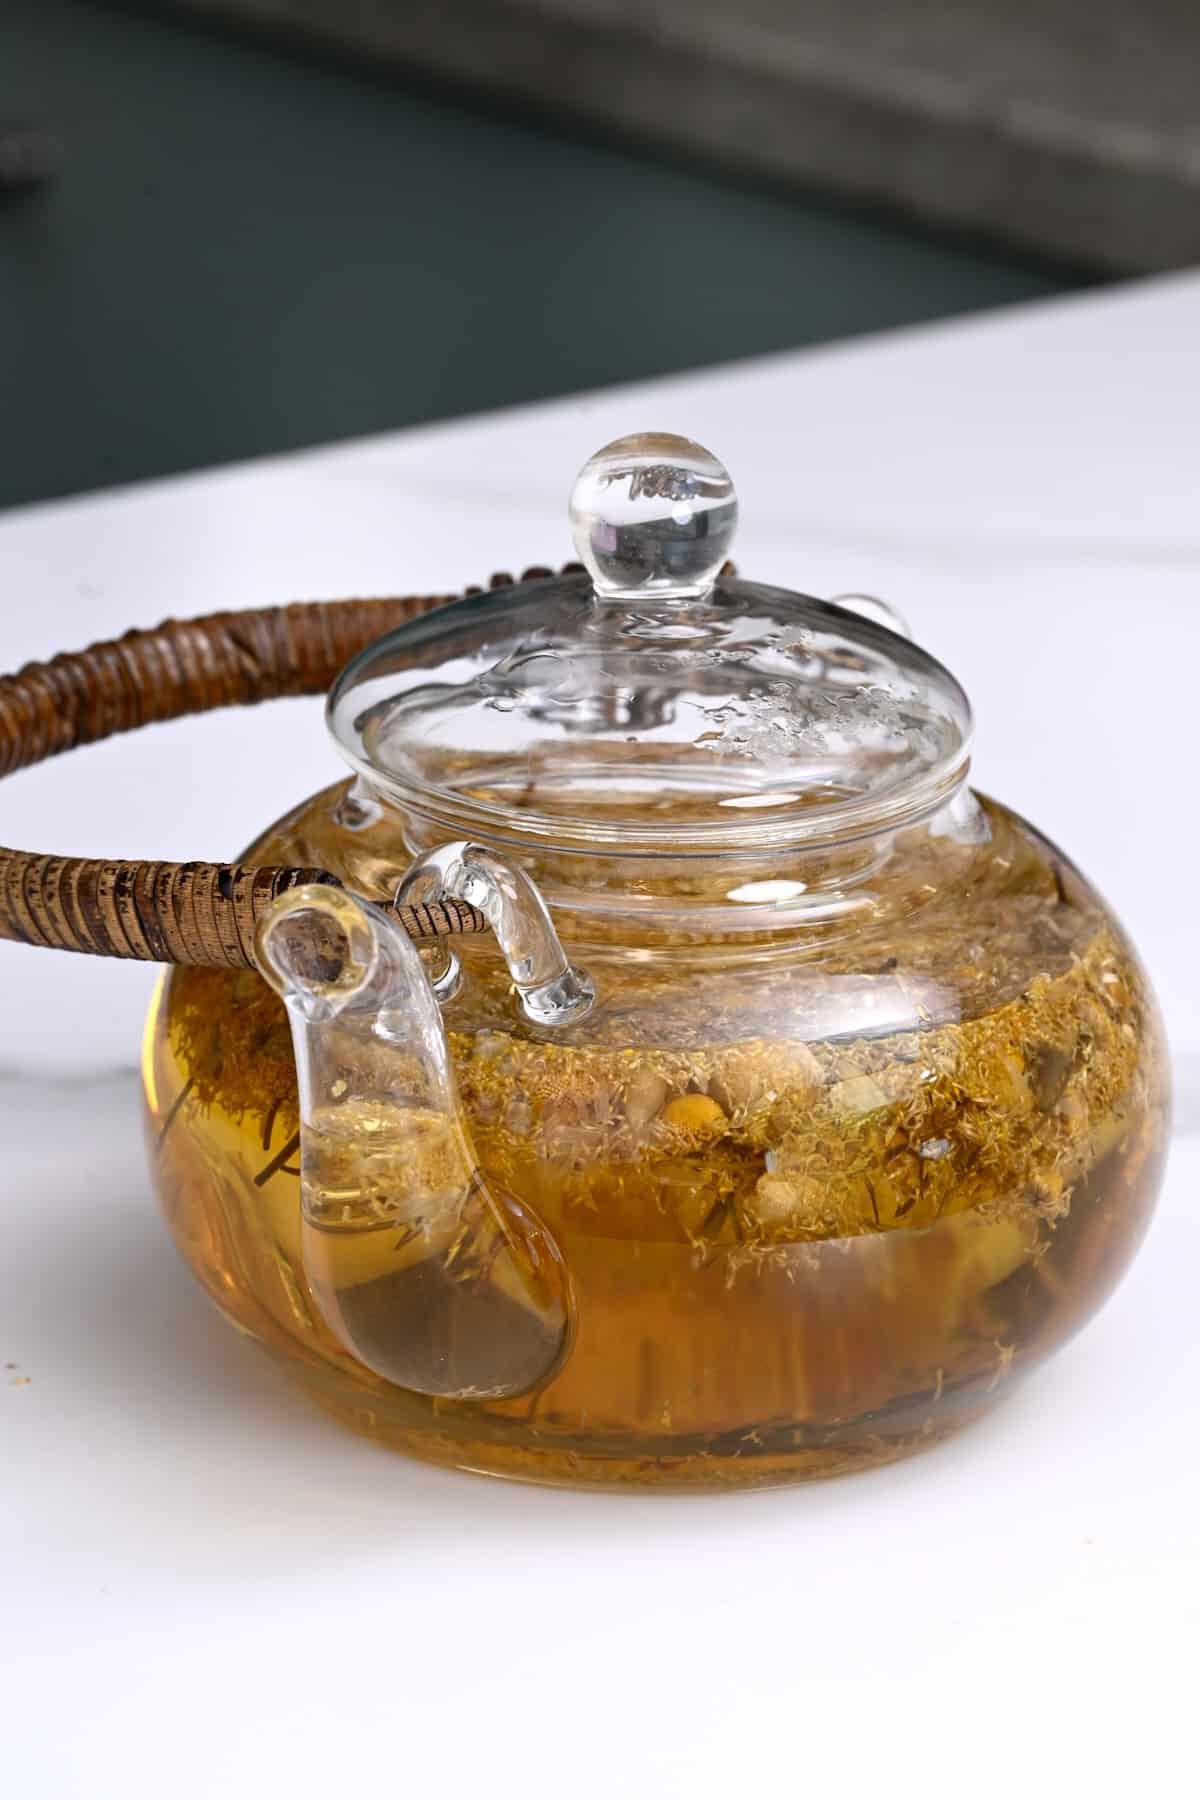 A teapot with chamomile tea